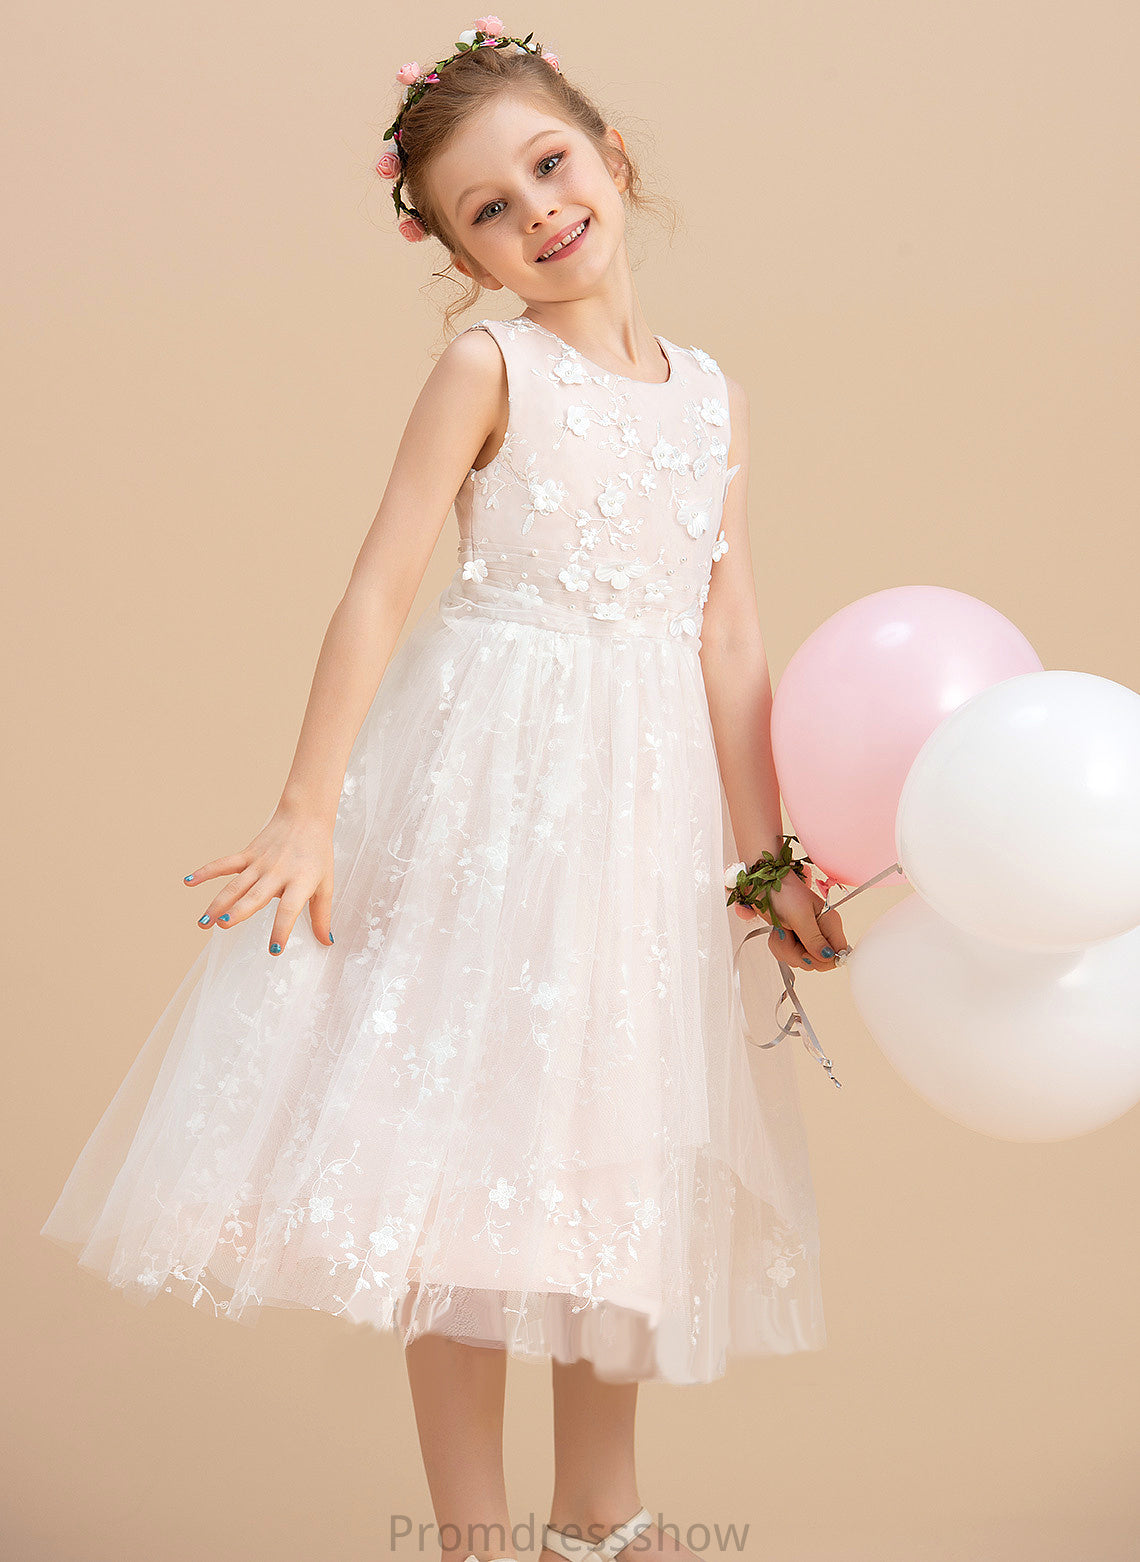 - Dress Flower Girl Dresses Tea-length With Sleeveless Beading/Flower(s) Girl Neck A-Line Tulle/Lace Flower Hannah Scoop